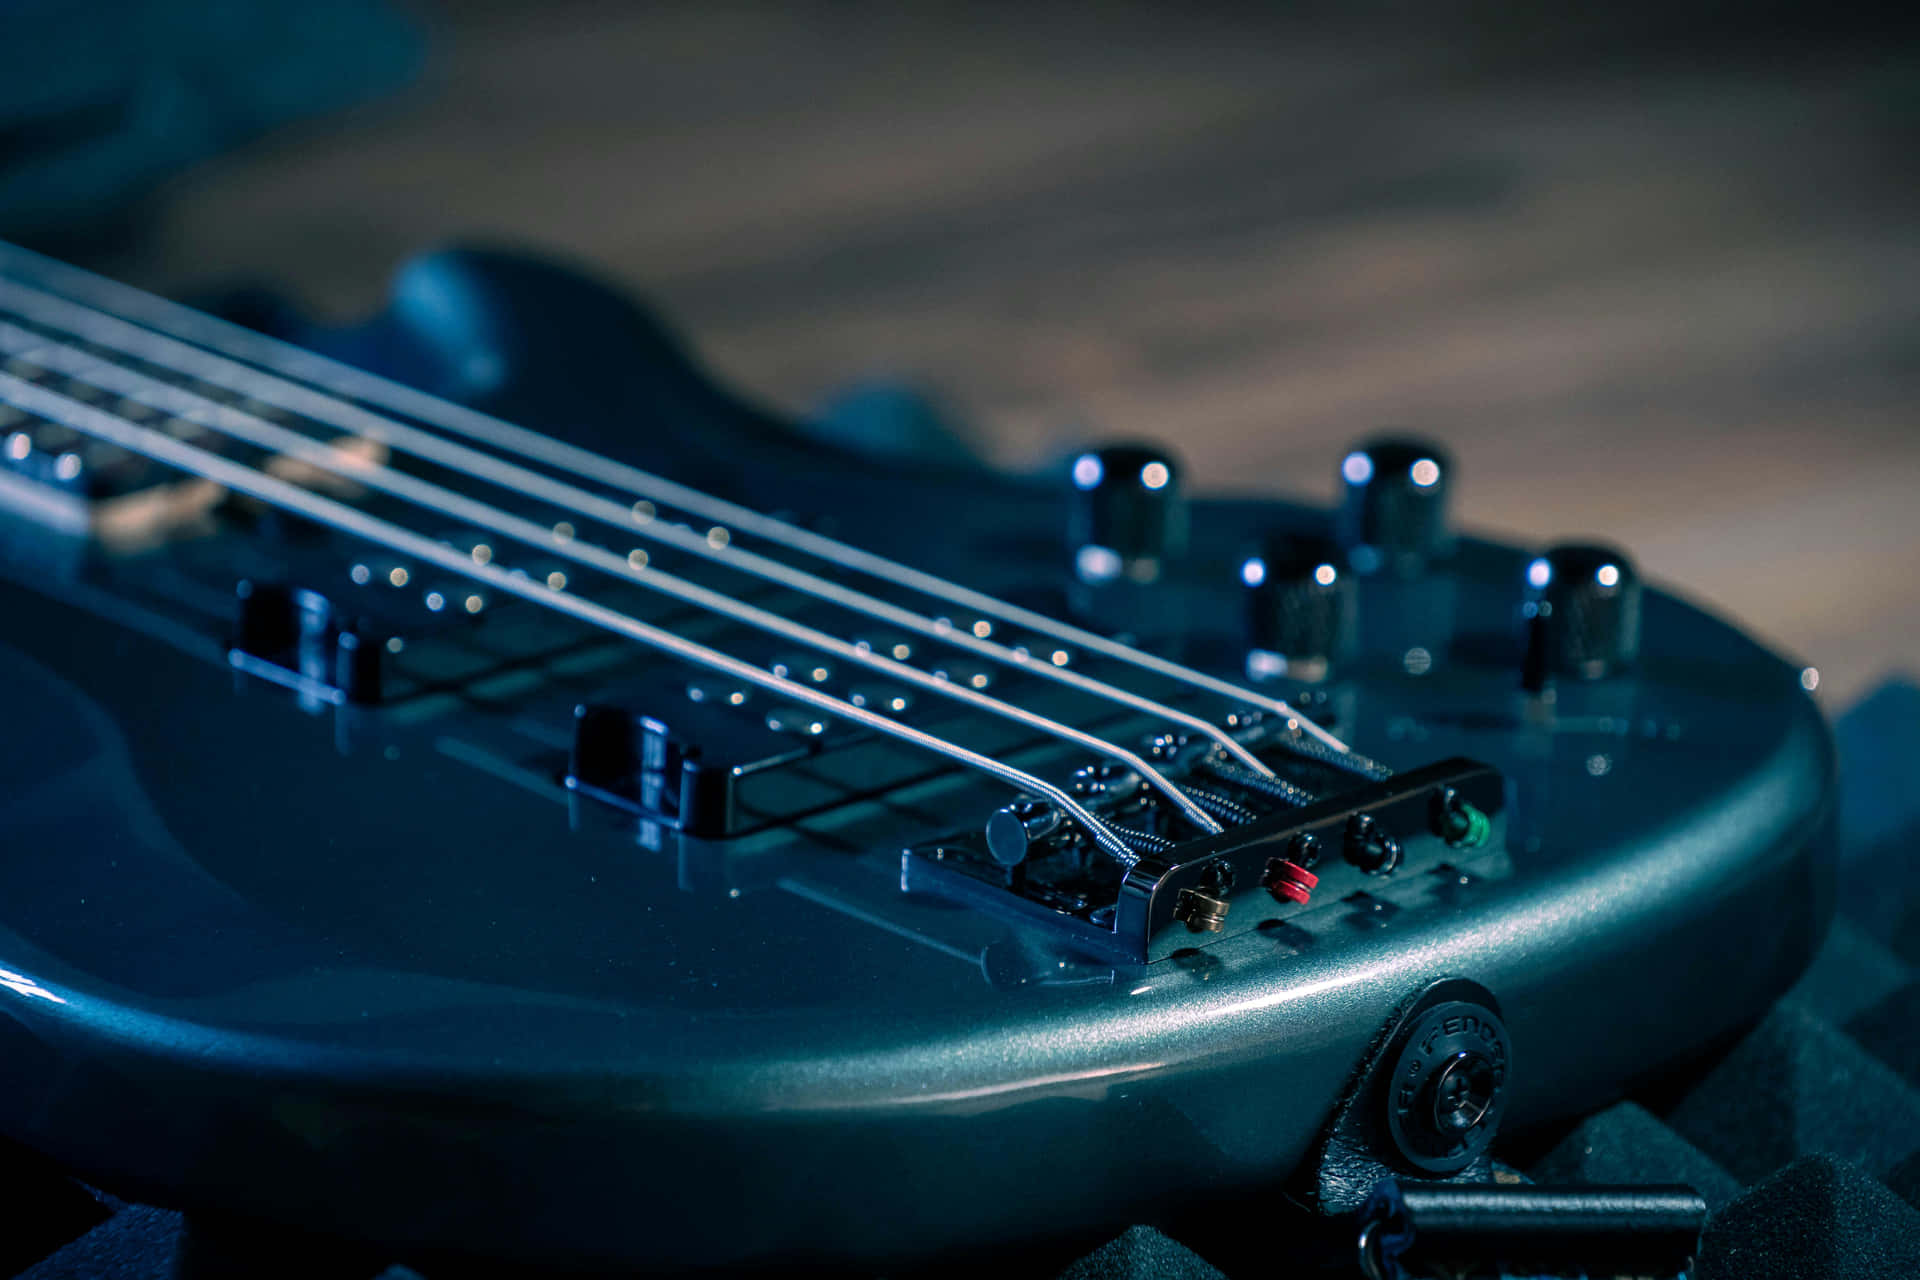 Closeup Bass Guitar Stringsand Body.jpg Wallpaper